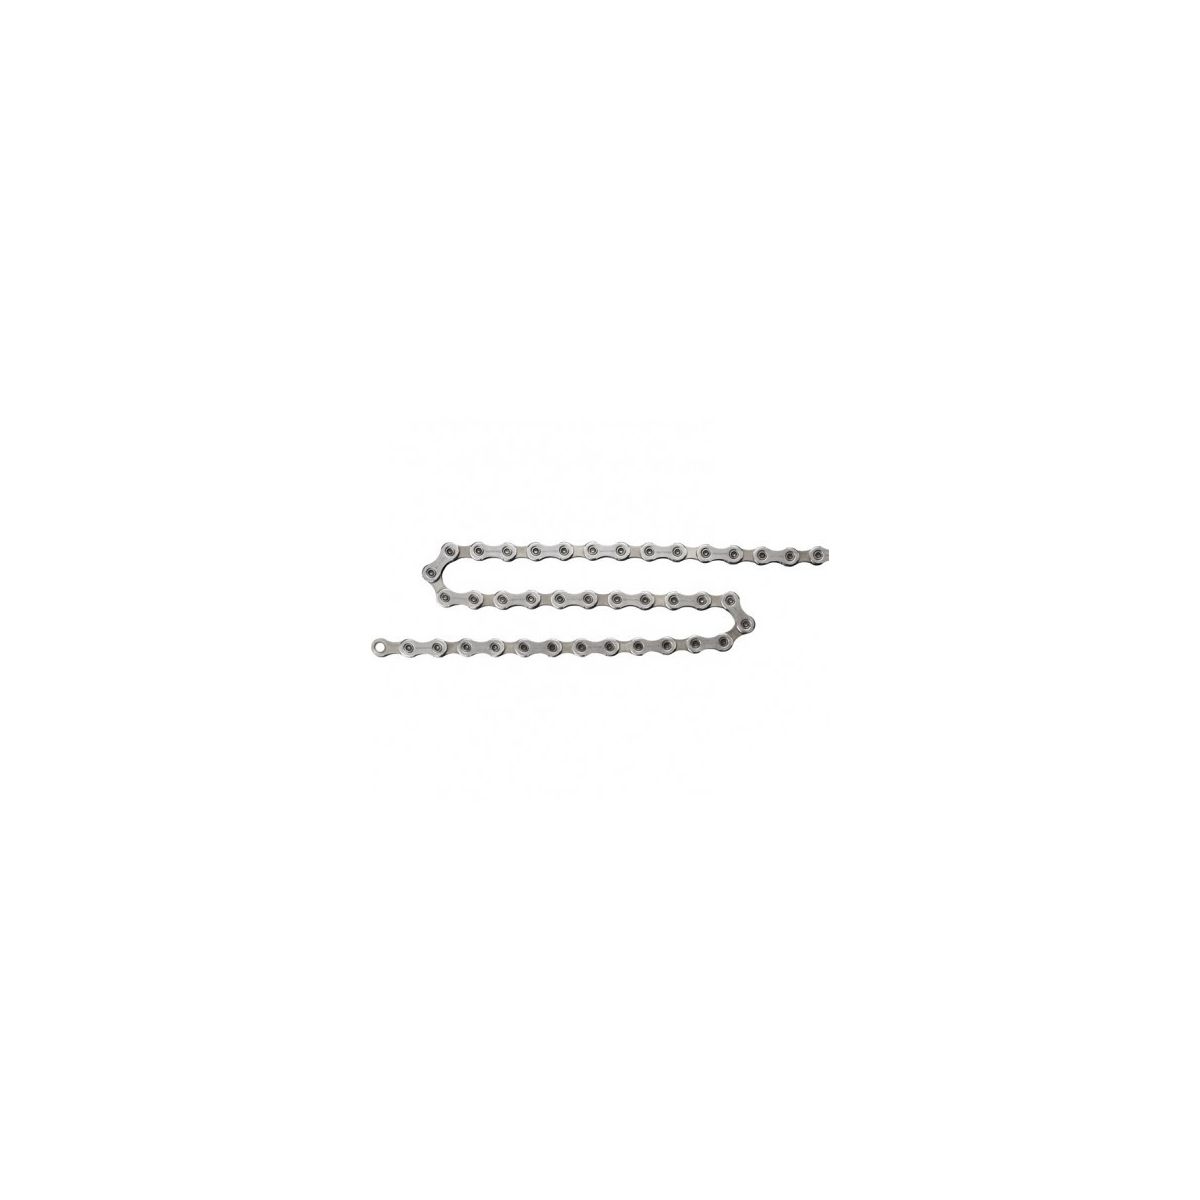 Shimano cadena para ebikes E6090-10 10v 138 eslabones